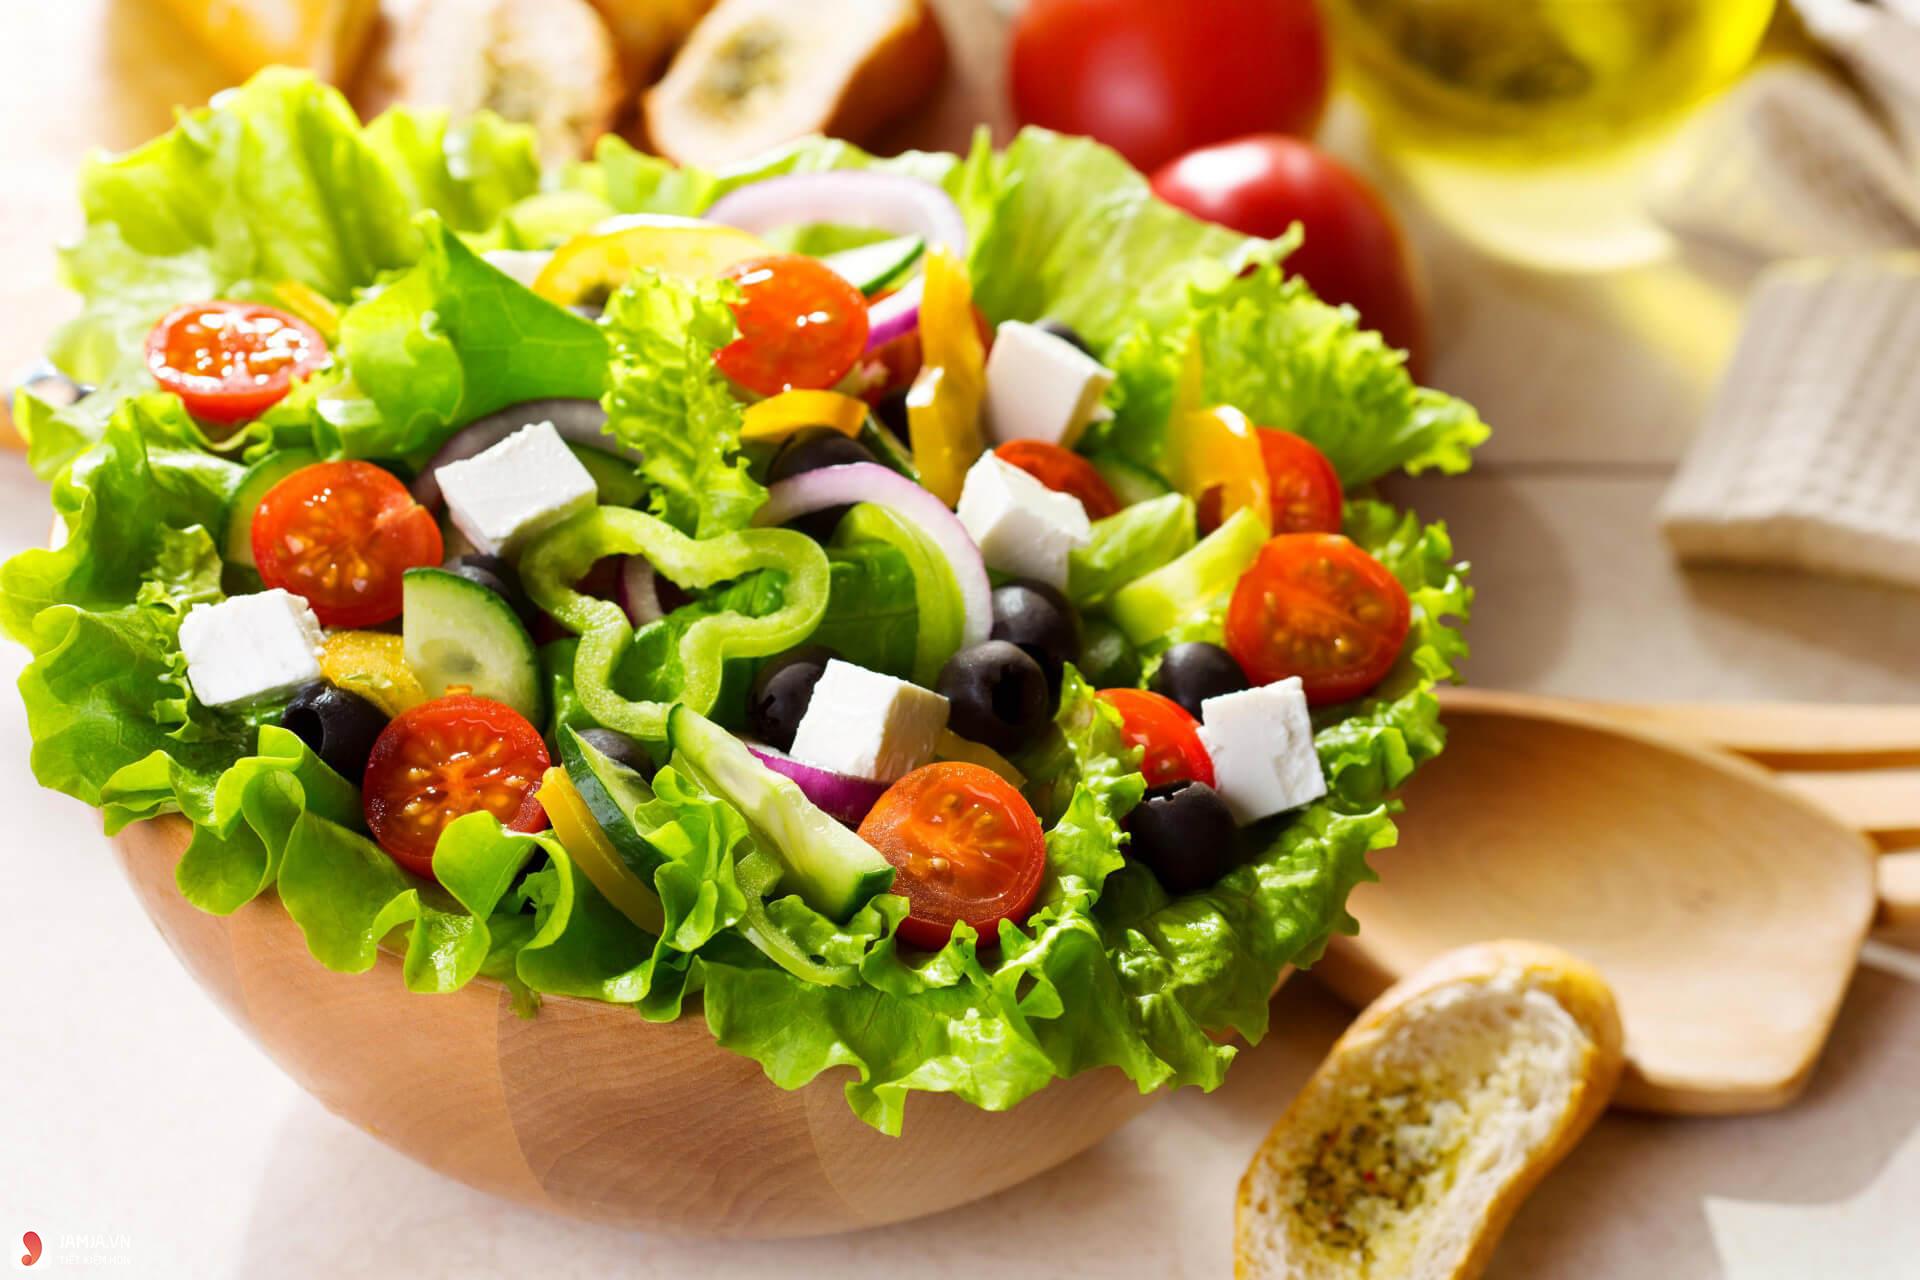 Làm sao để món salad khi trộn với sốt chanh leo vẫn giòn và không bị nhũn?
